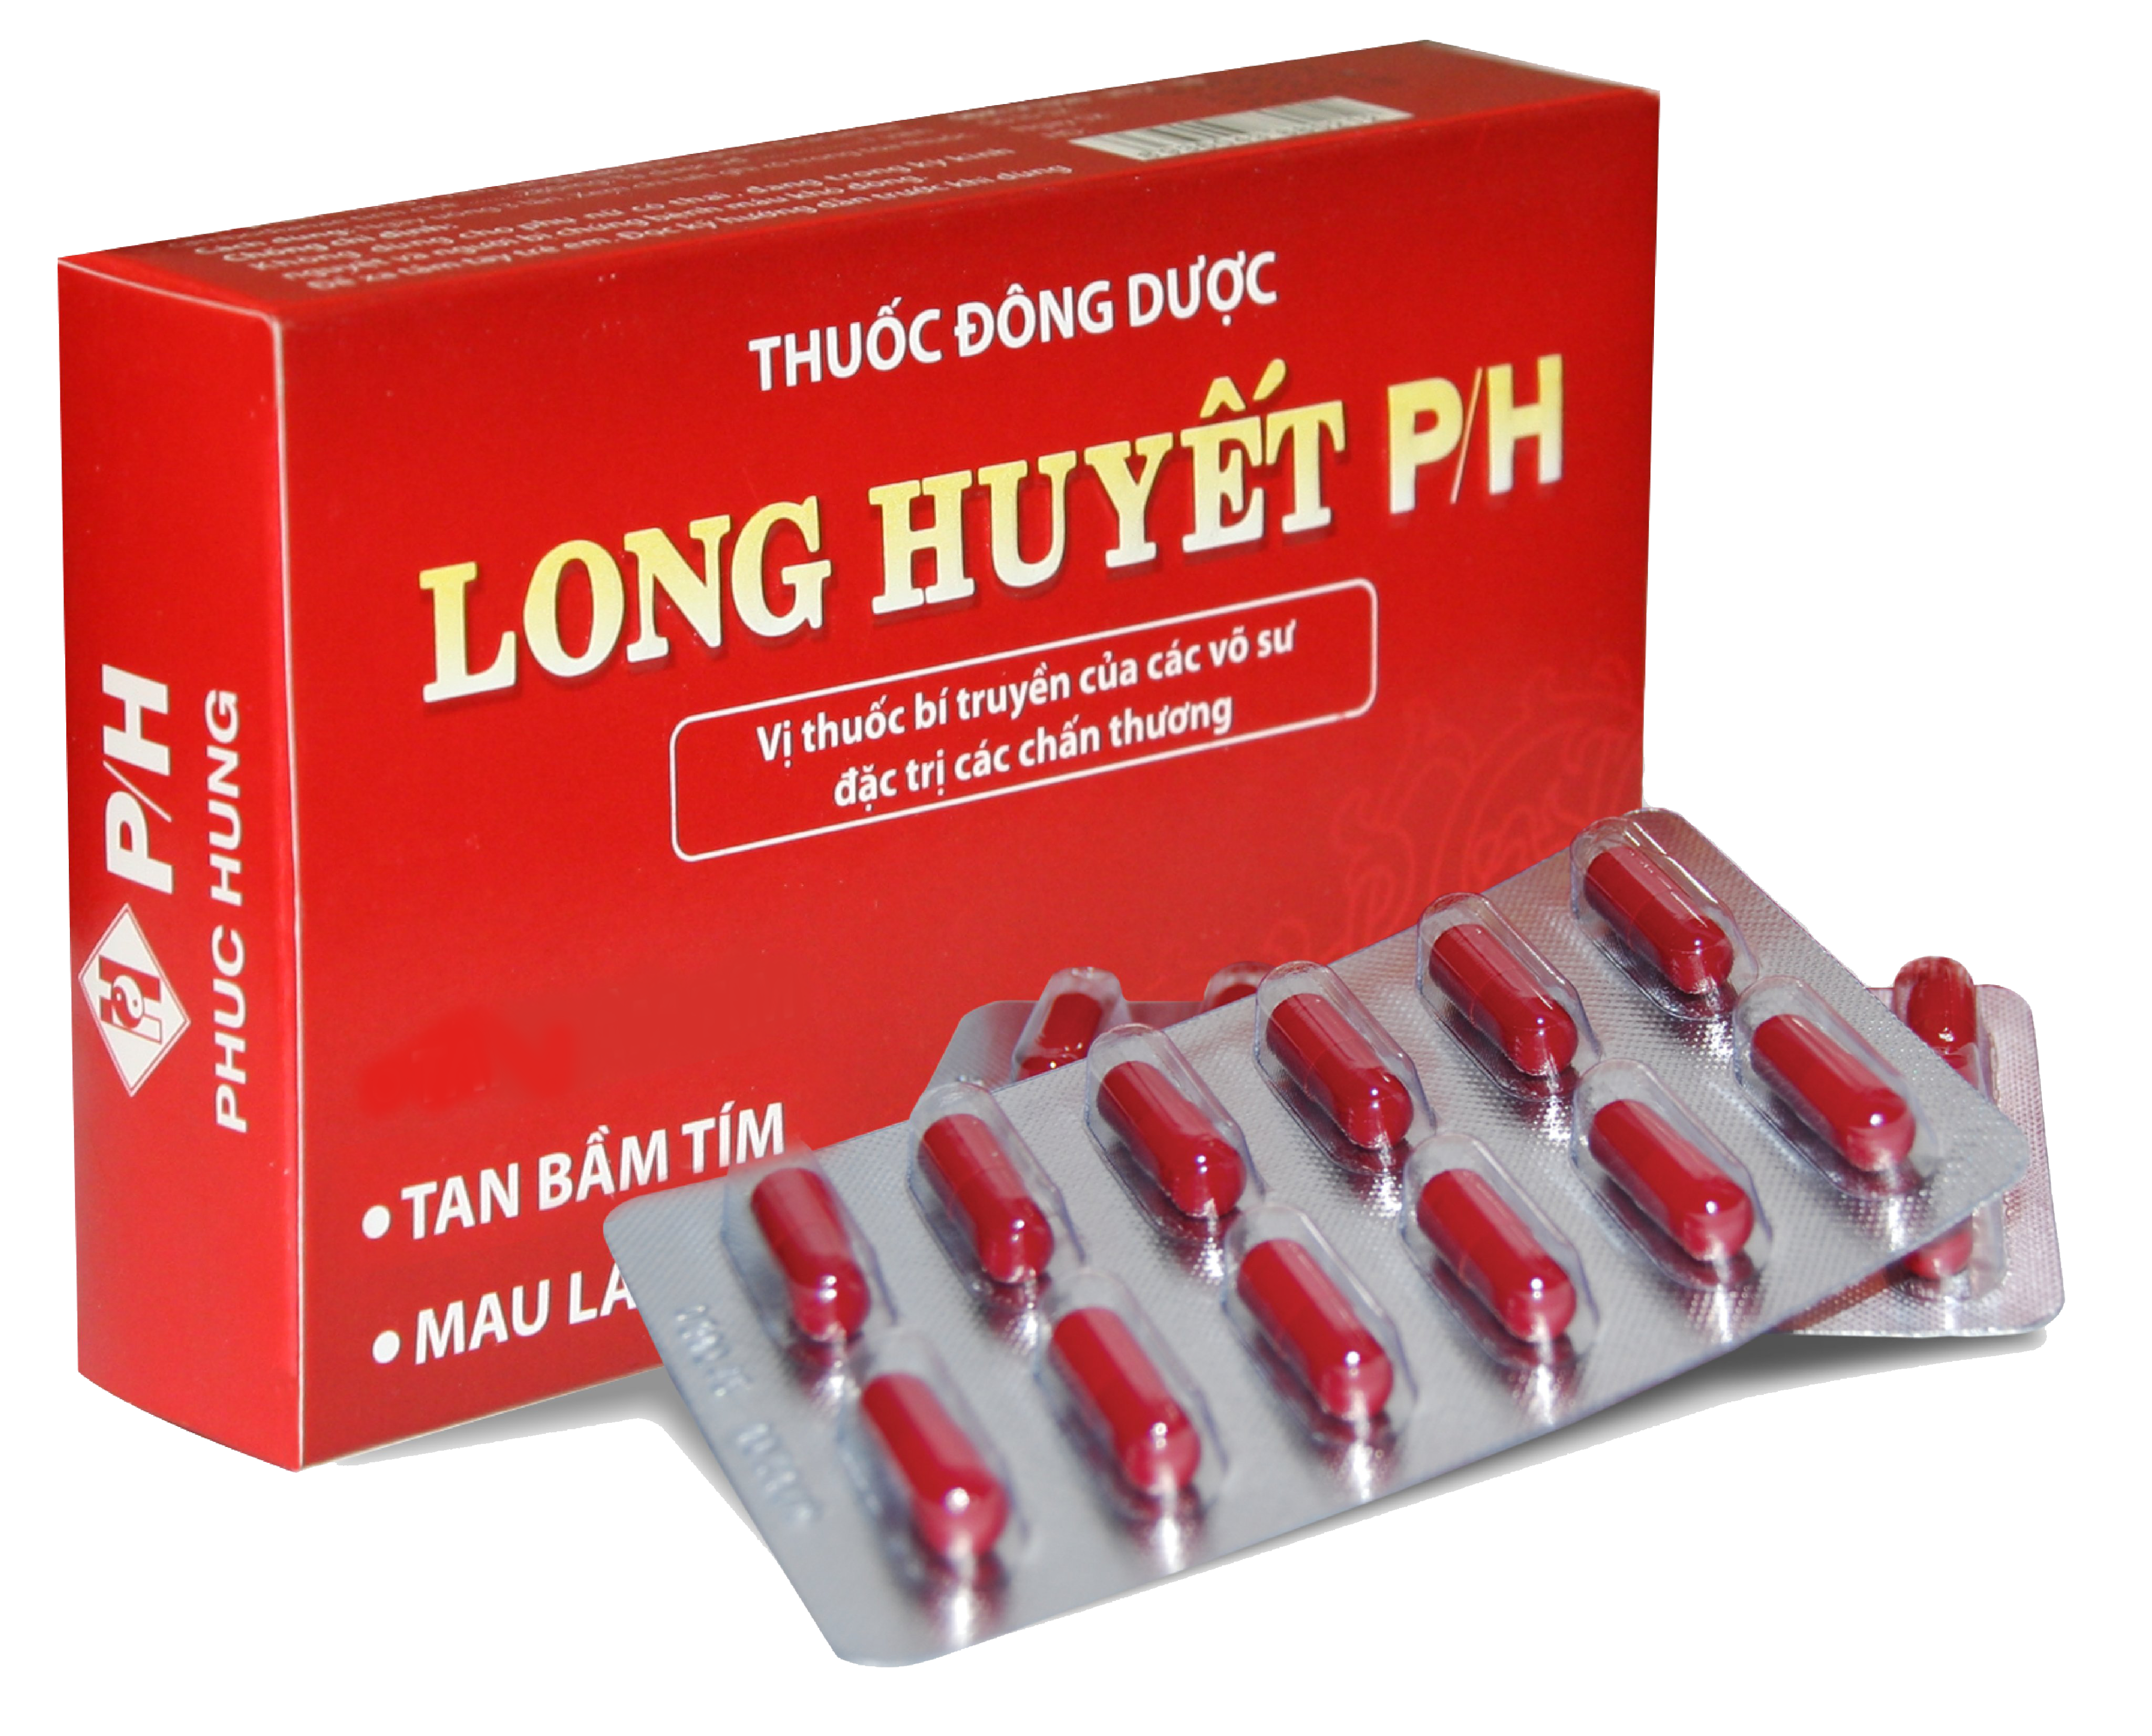 Long huyết P/H - Thuốc thảo dược thiết yếu cho các vết thương, bầm tím